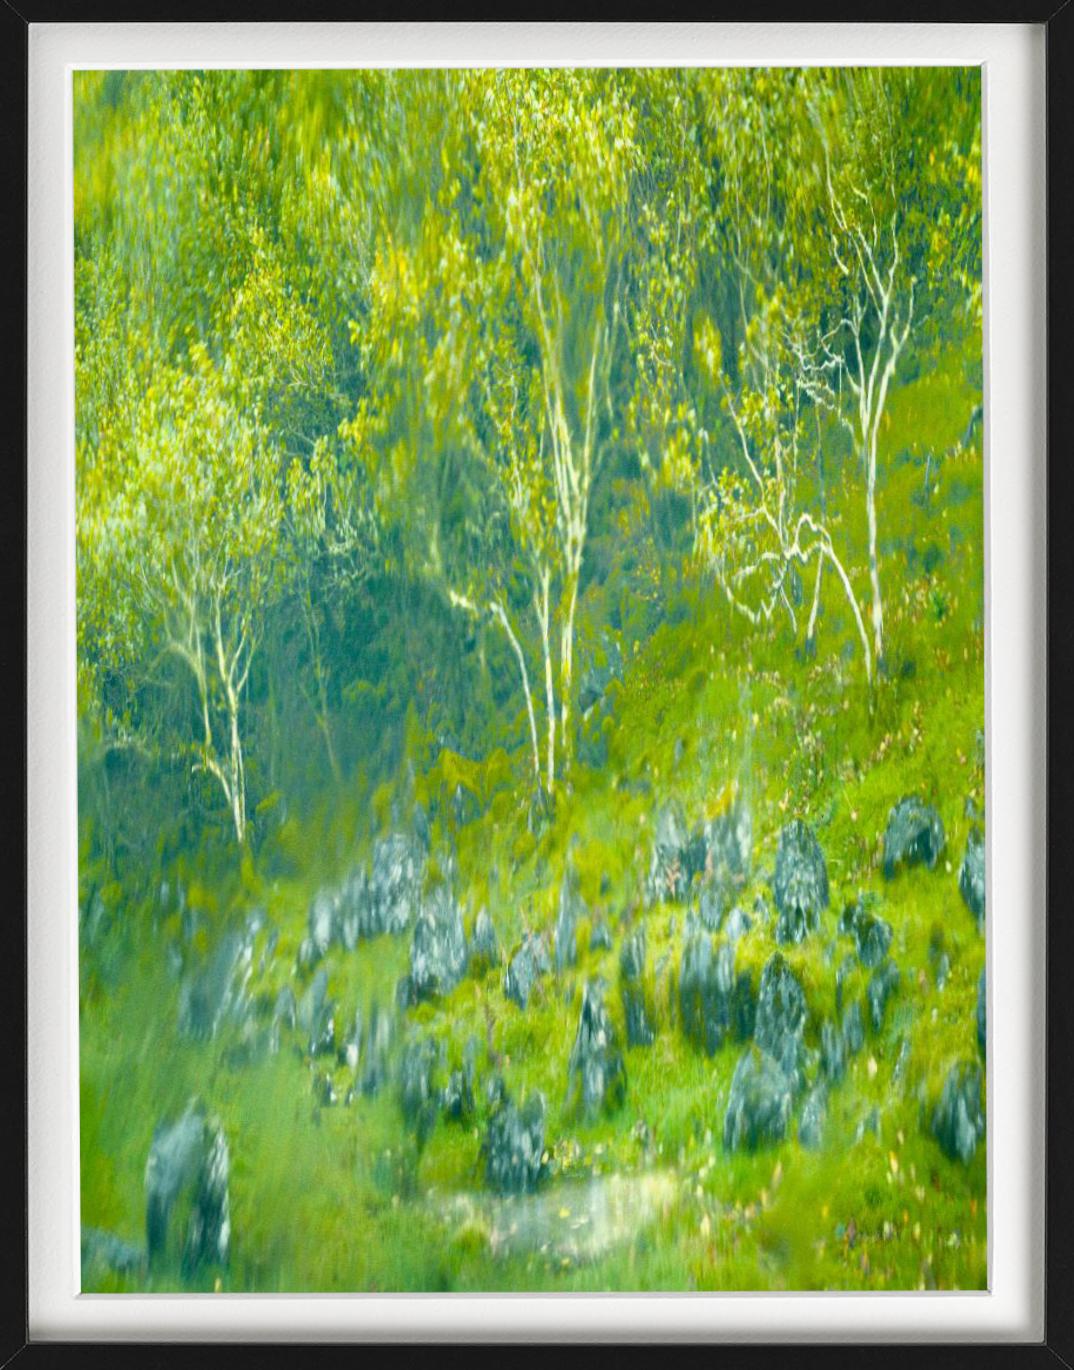 « Fayry Glen » - plantes vertes et bleues floues, photographie d'art, 2013 - Contemporain Photograph par Albert Watson